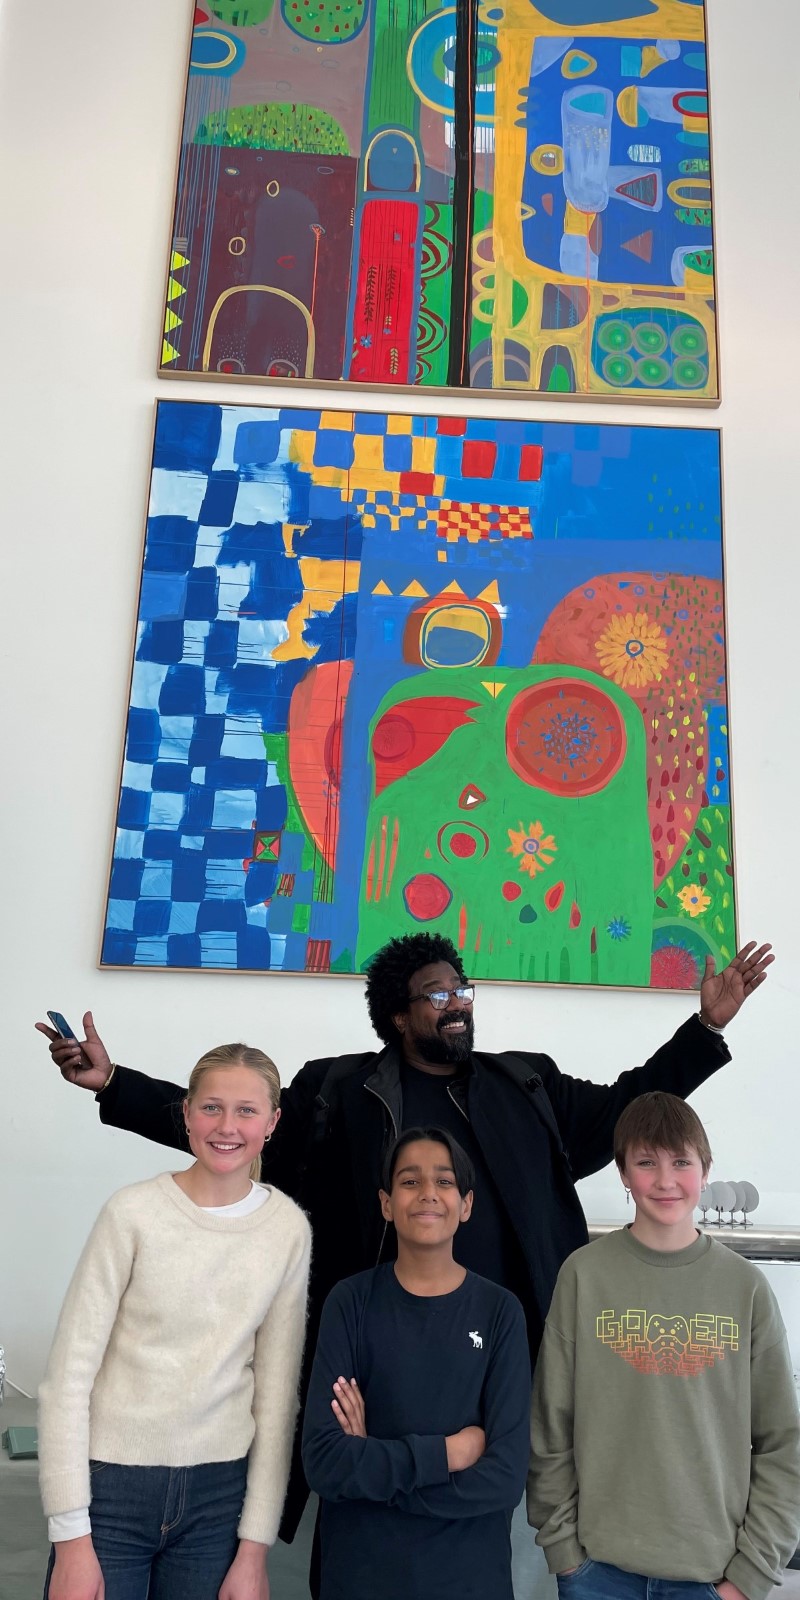 Tre barn og en mann står samlet foran en vegg med fargerike malerier over seg. Alle fire ser mot kamera og smiler.